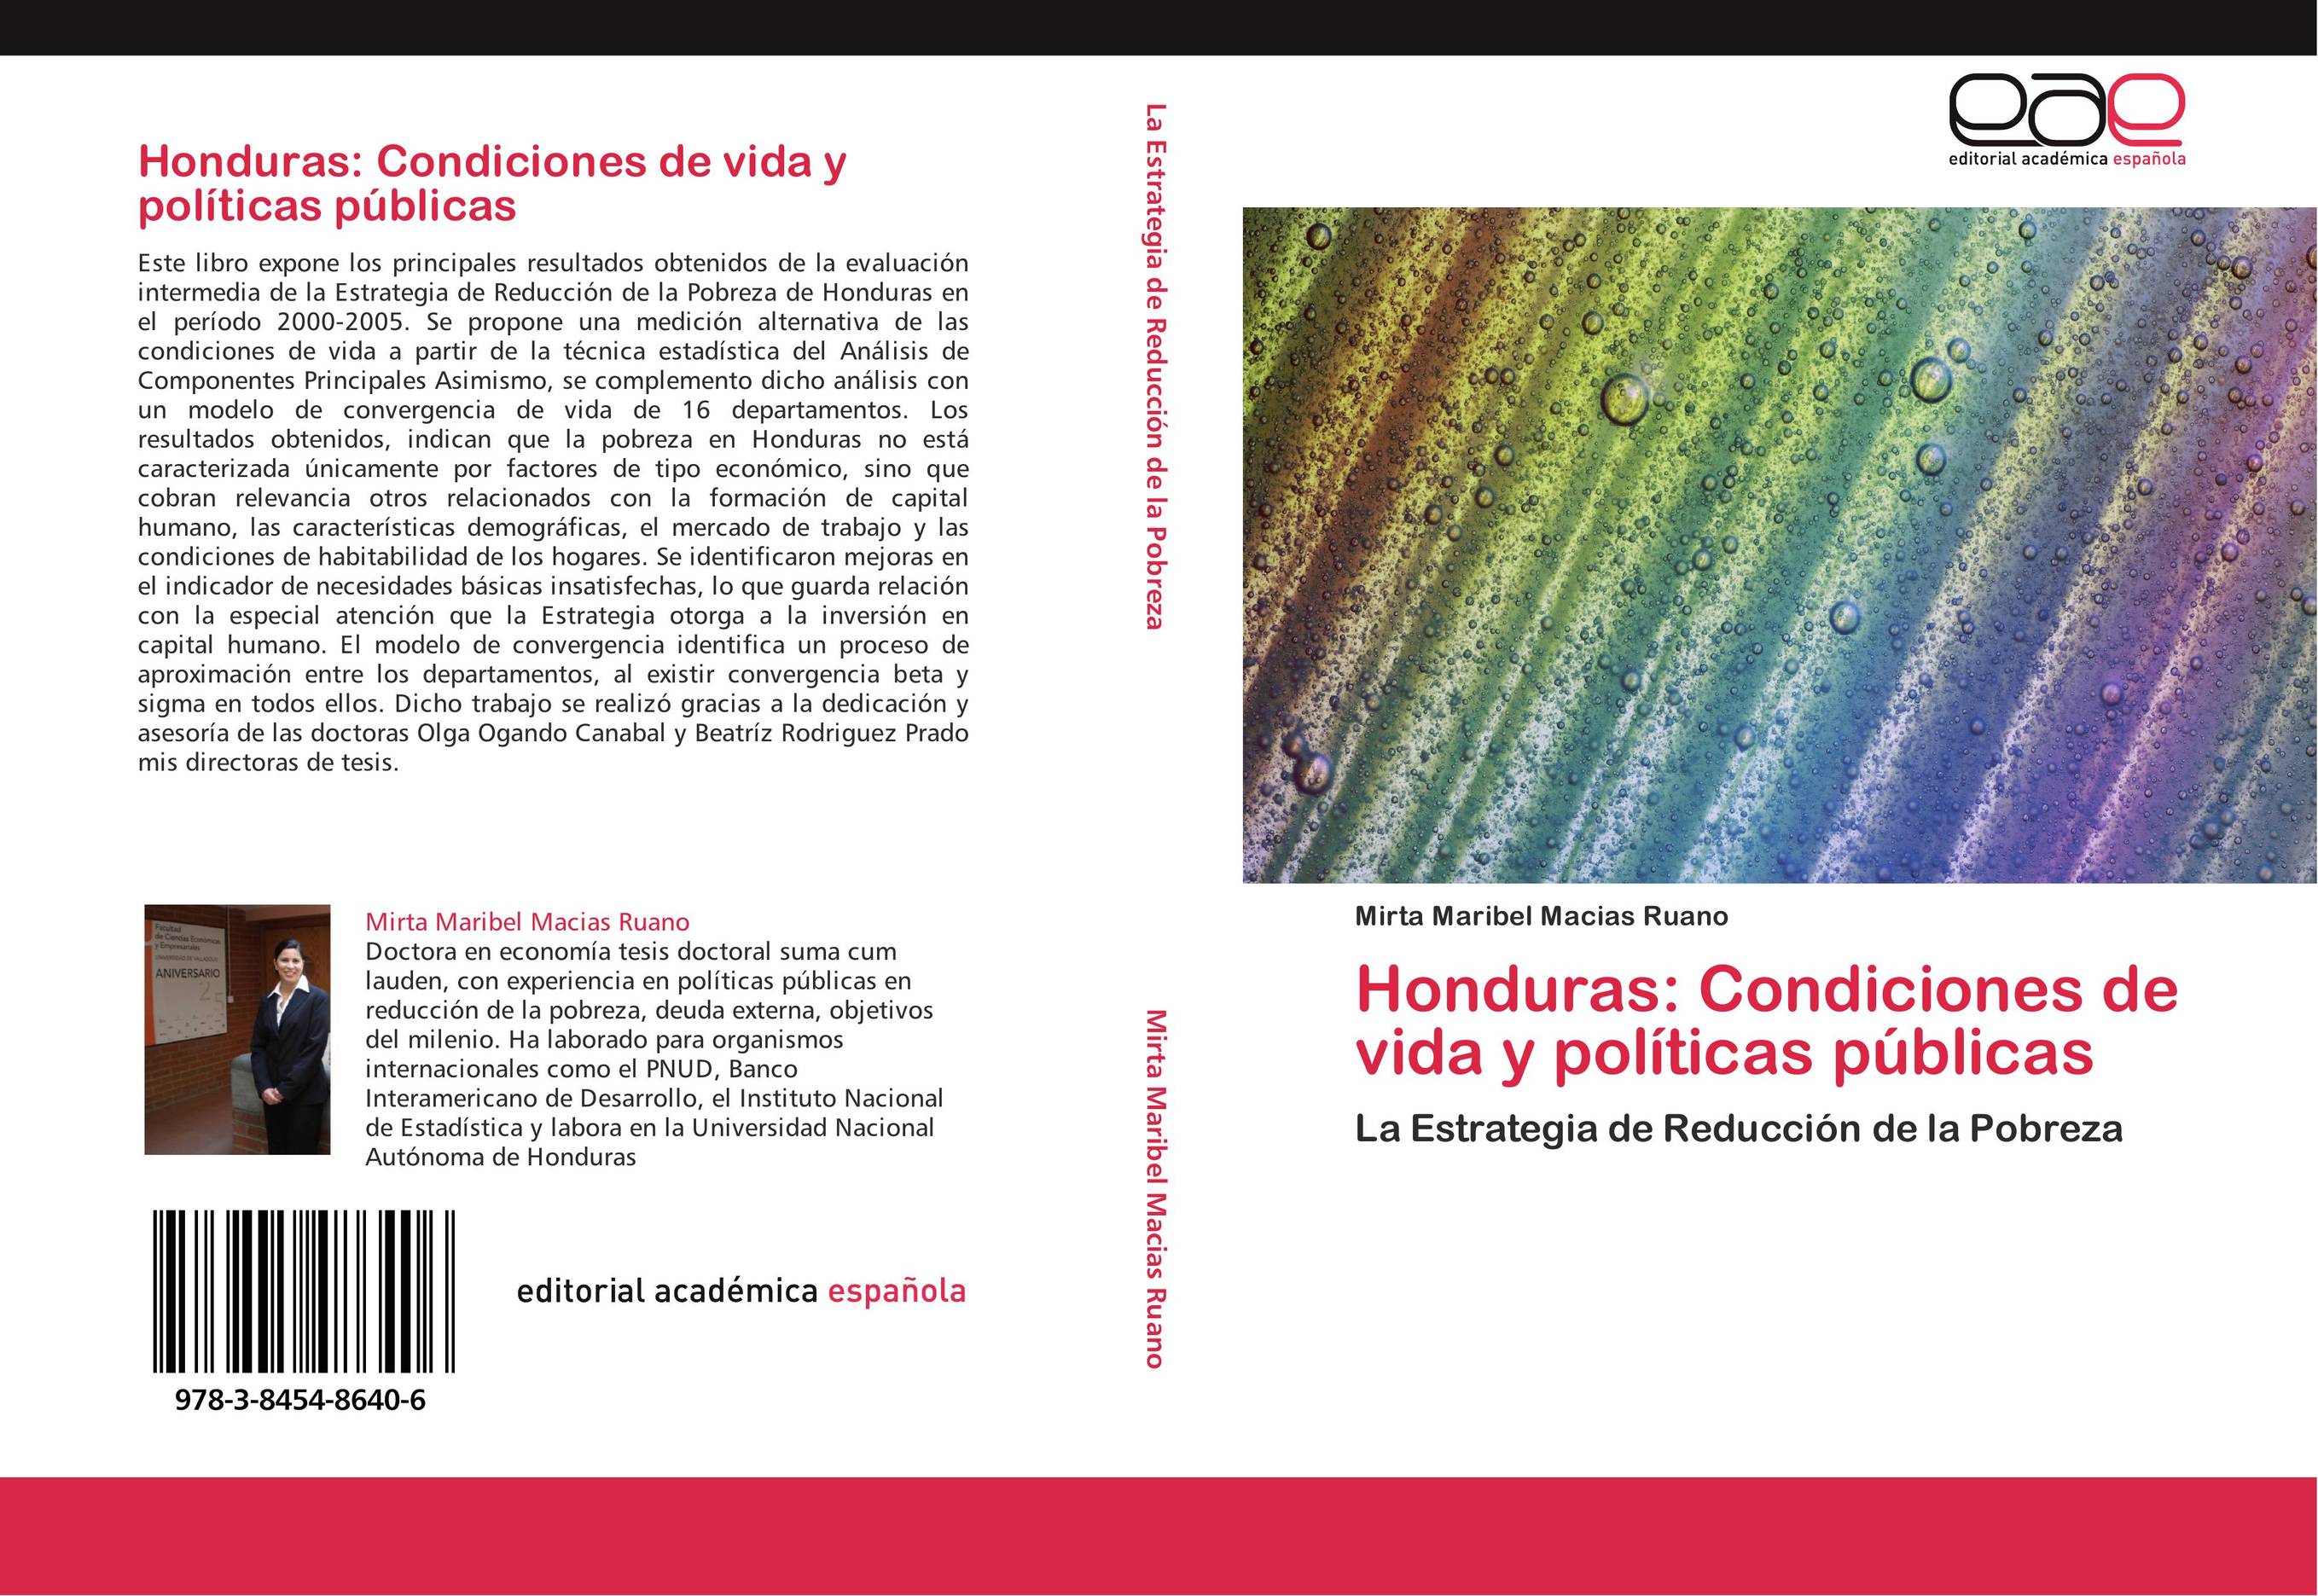 Honduras: Condiciones de vida y políticas públicas